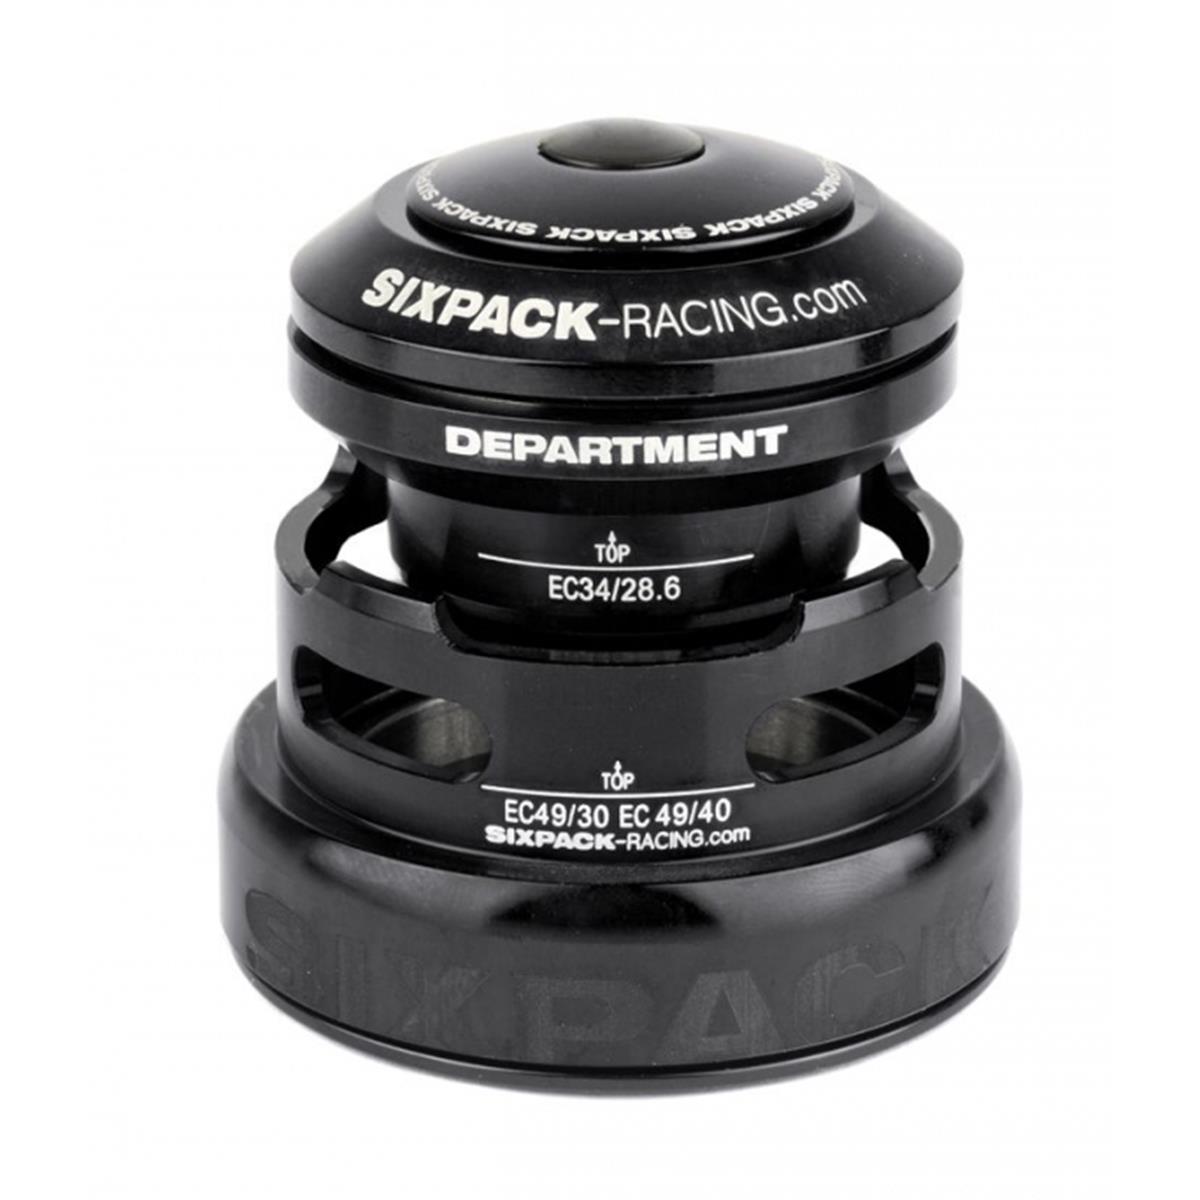 Sixpack Headset Department 2in1 Black, EC34 49/28.6 I EC49/30 & EC34/28.6 I EC49/40